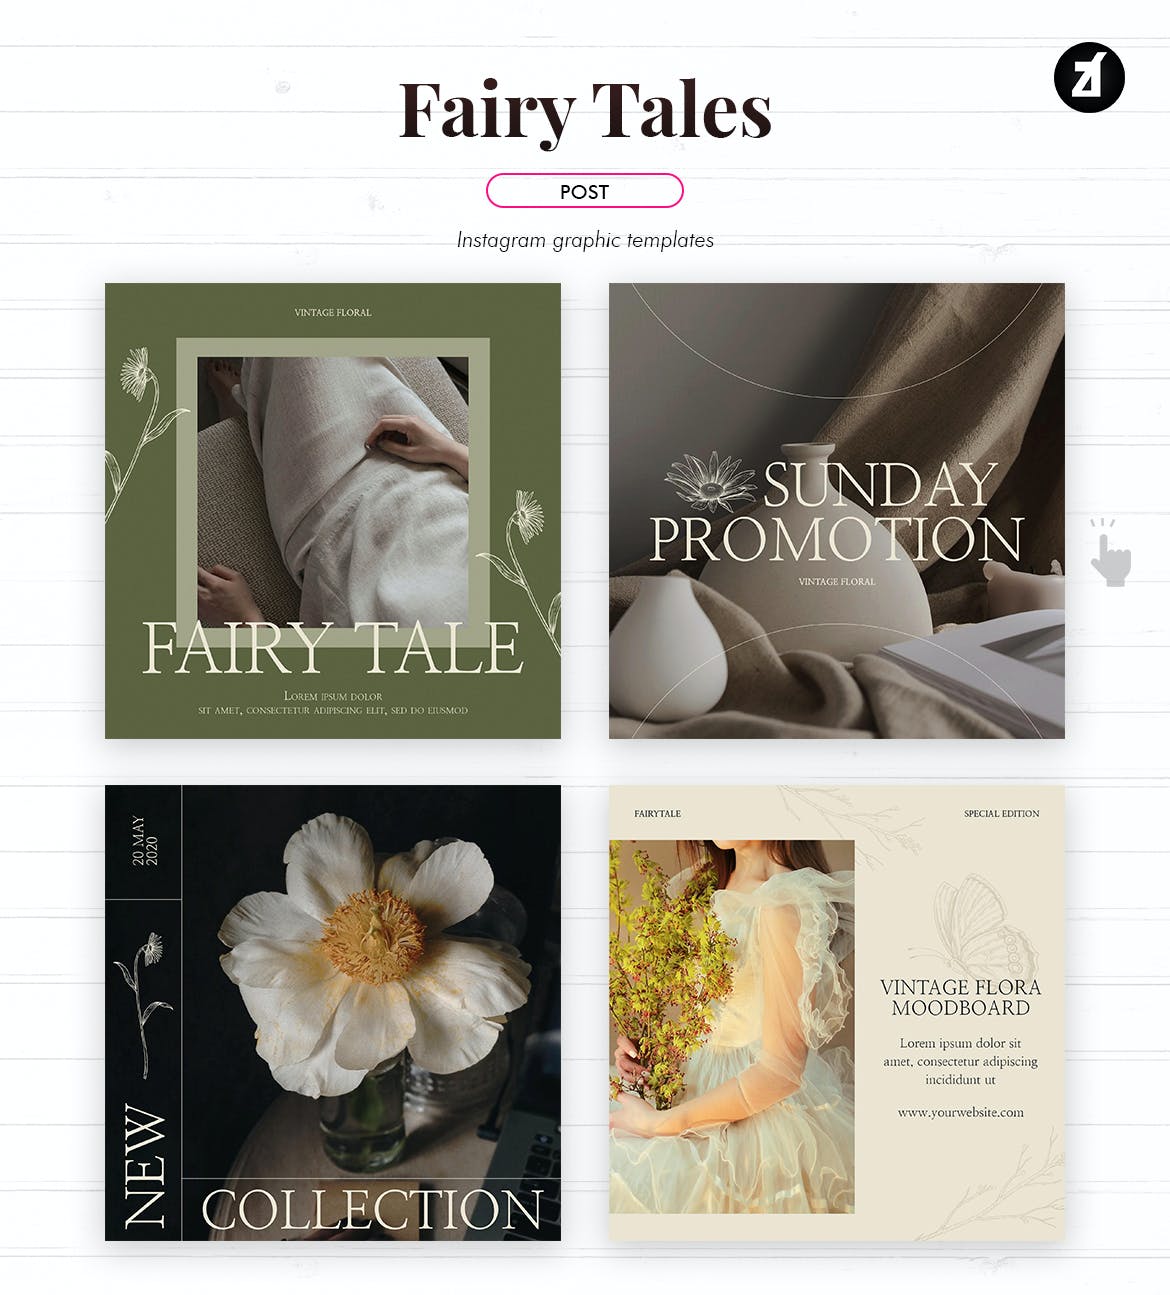 复古童话主题社交媒体图形定制模板 Fairy tales social media graphic templates设计素材模板